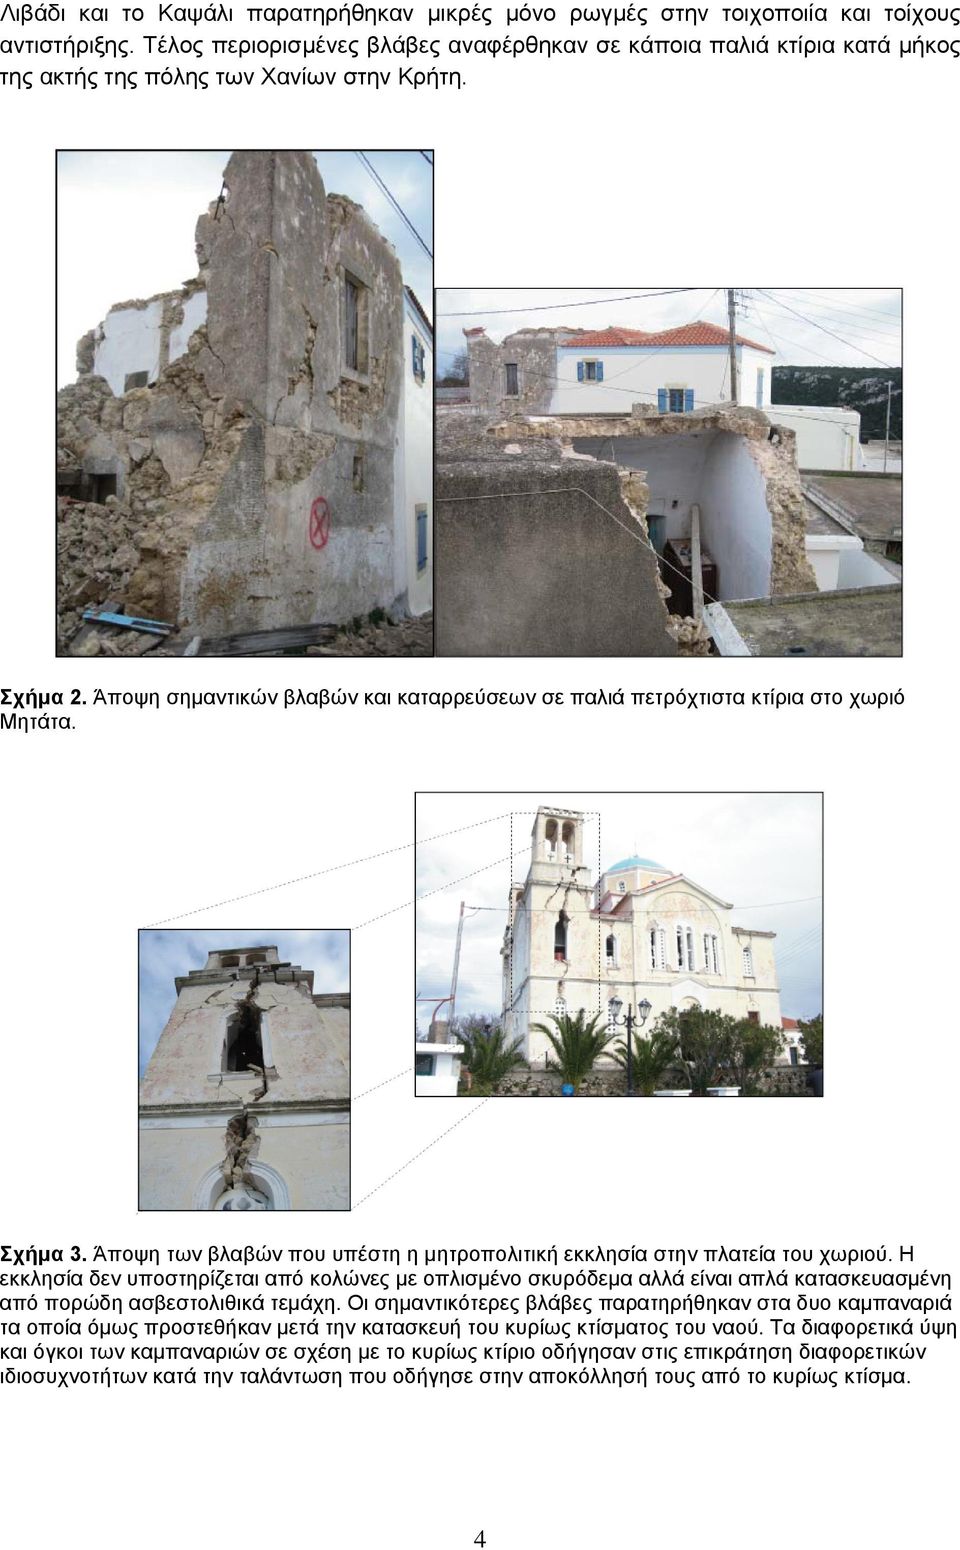 Άποψη σημαντικών βλαβών και καταρρεύσεων σε παλιά πετρόχτιστα κτίρια στο χωριό Μητάτα. Σχήμα 3. Άποψη των βλαβών που υπέστη η μητροπολιτική εκκλησία στην πλατεία του χωριού.